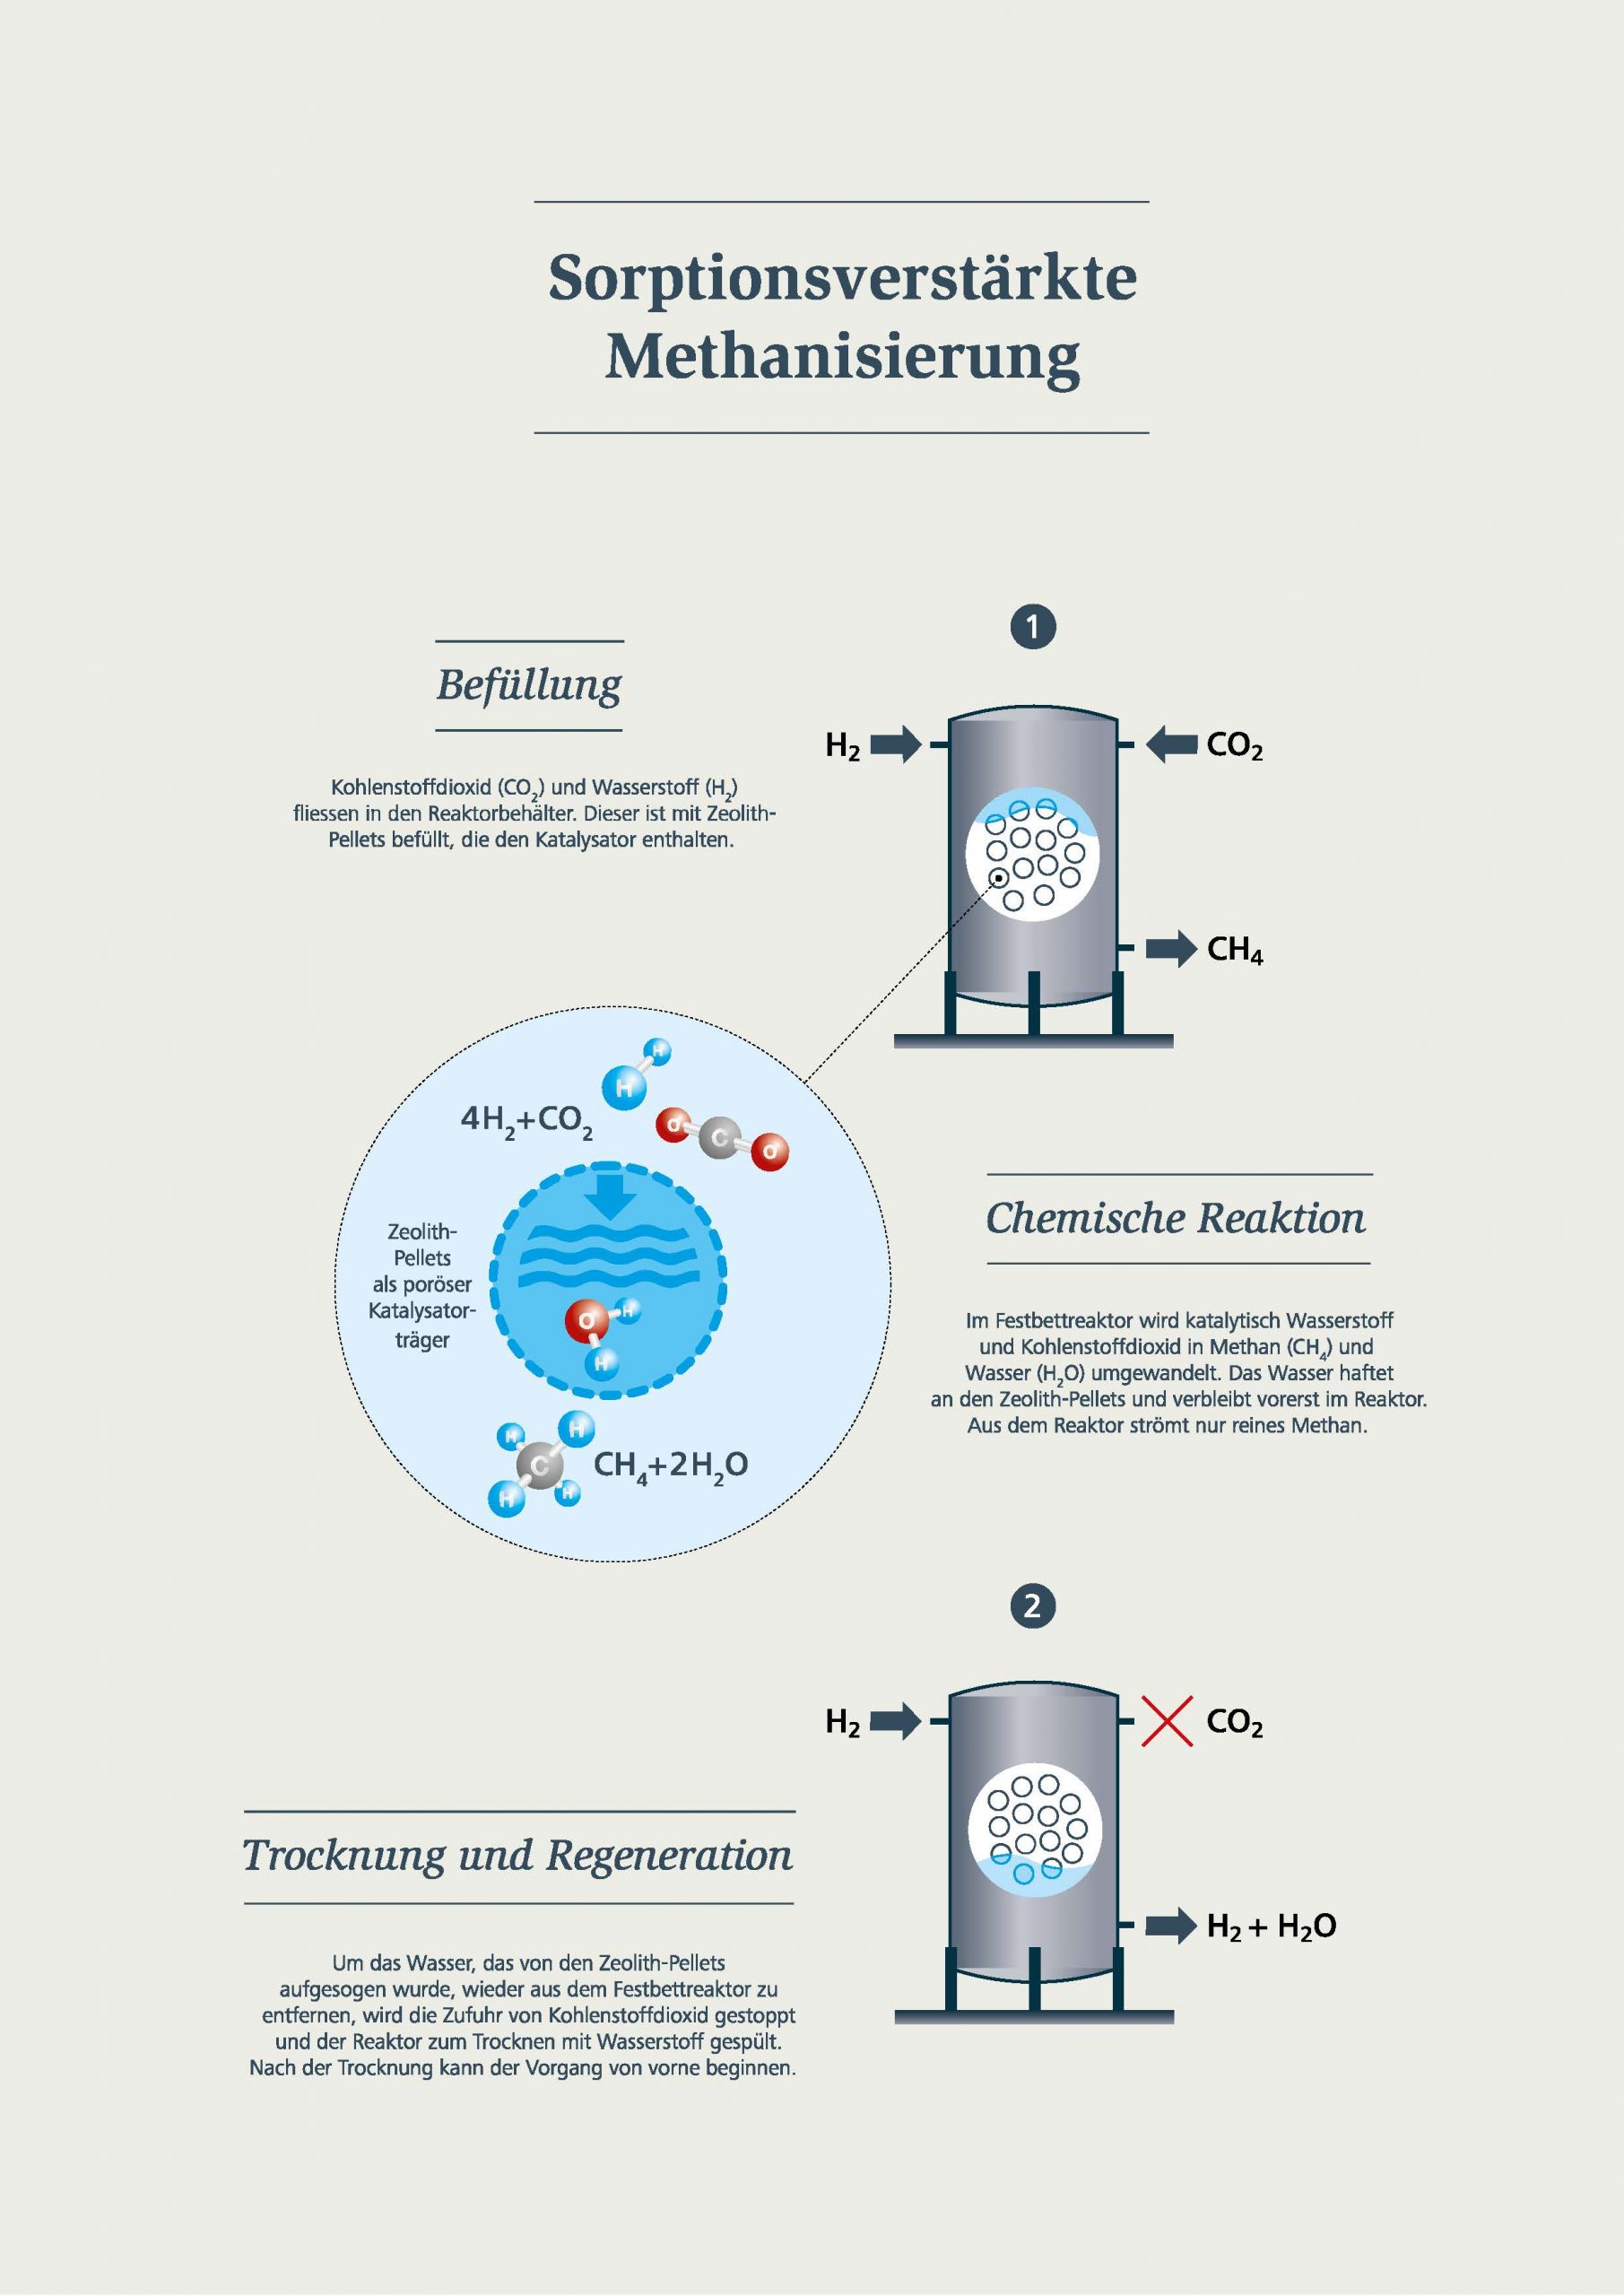 Sorptionsverstärkte Methanisierung: Befüllung, chemische Reaktion und Trocknung und Regeneration